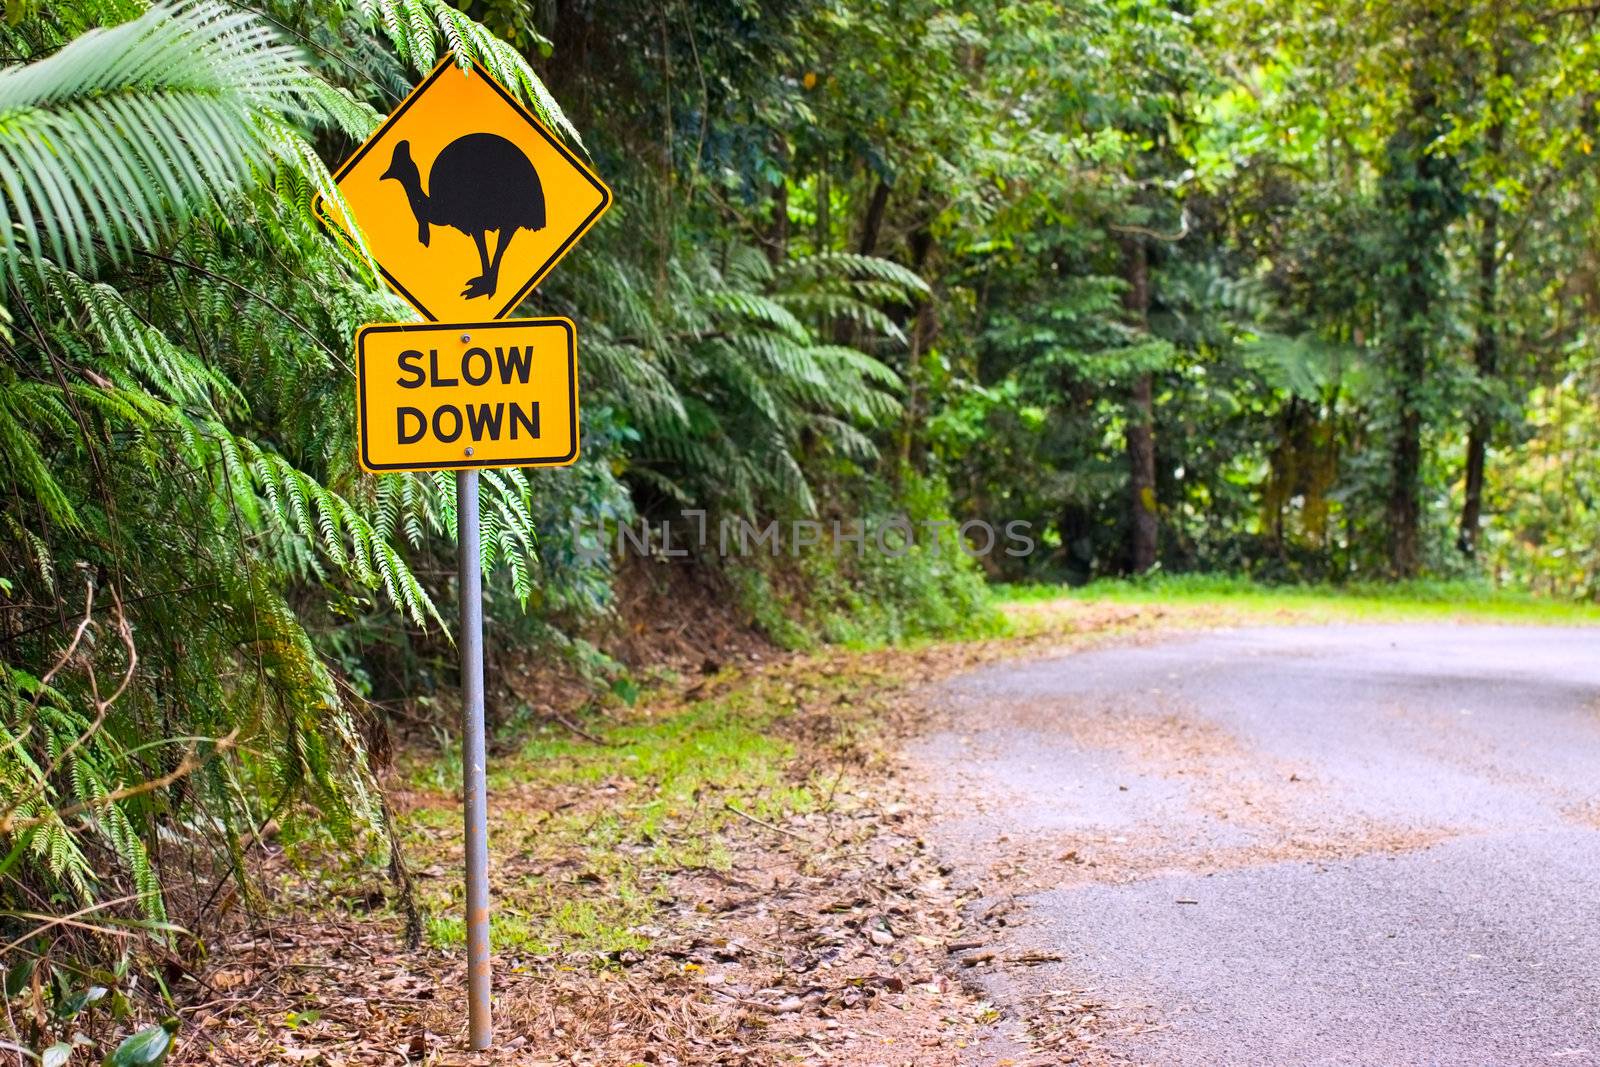 Cassowary road warning sign in Asutralia by Jaykayl